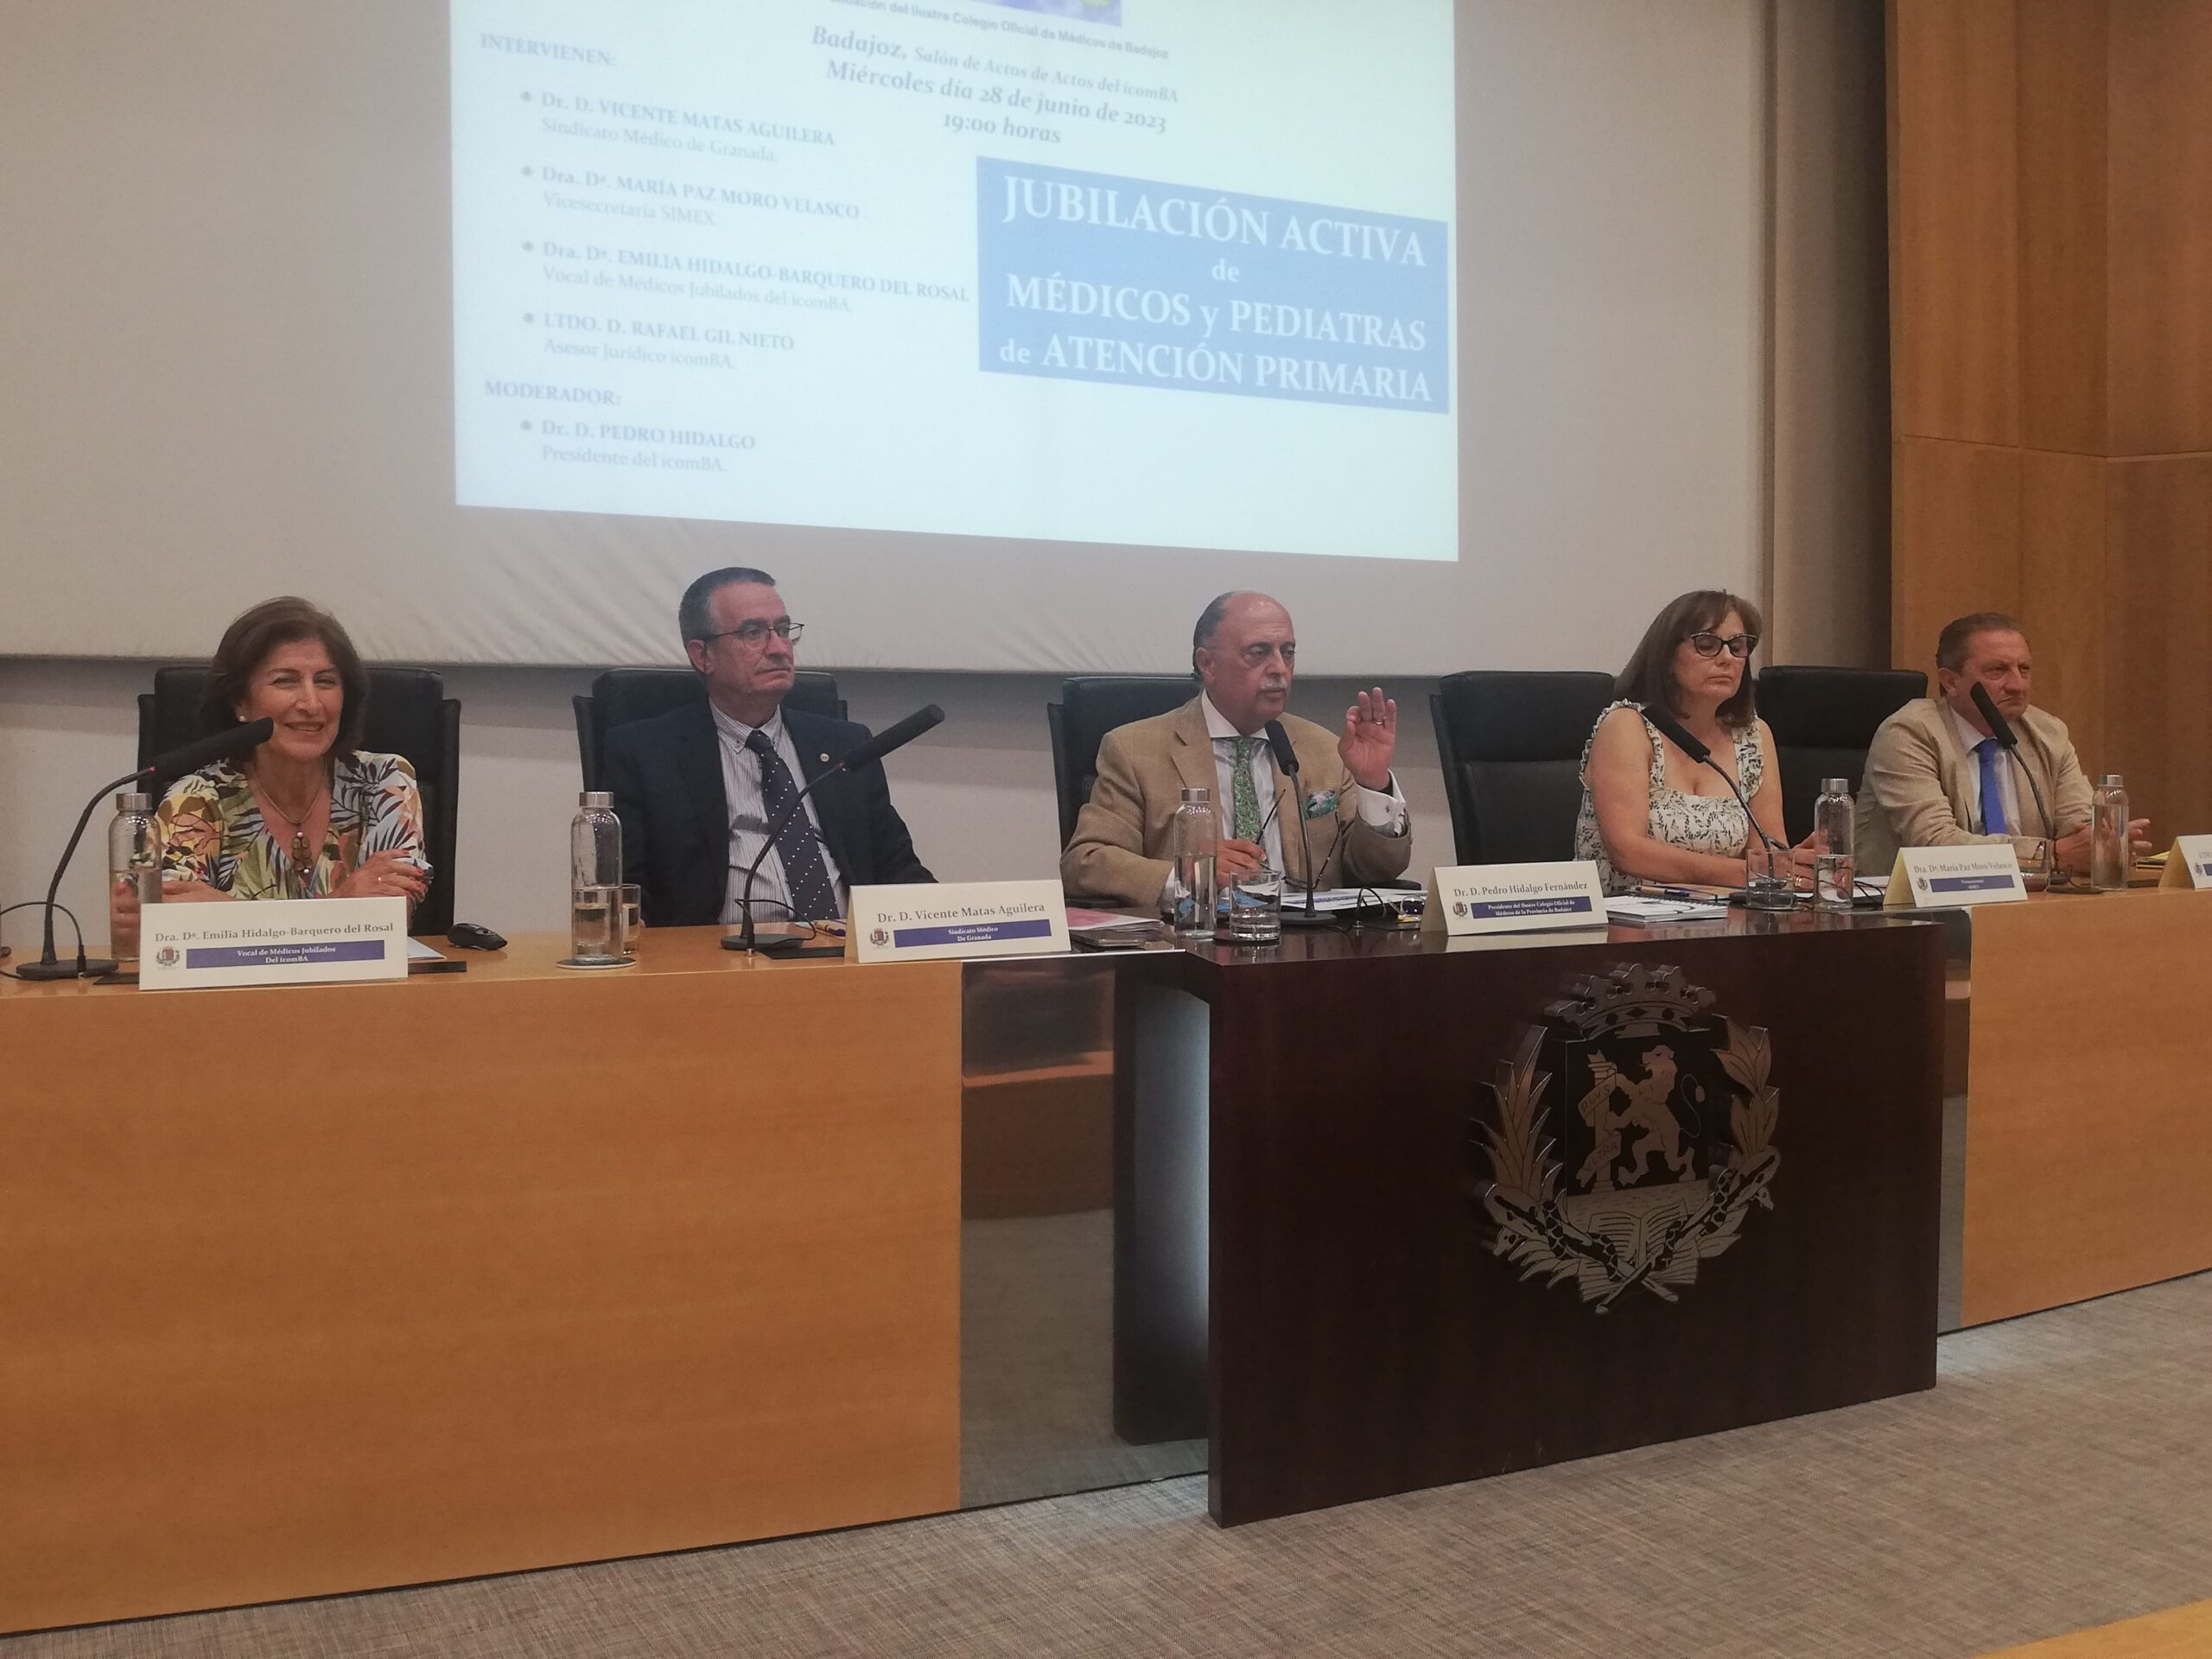 El Colegio de Médicos de Badajoz resuelve las dudas de la jubilación activa a través de una jornada formativa